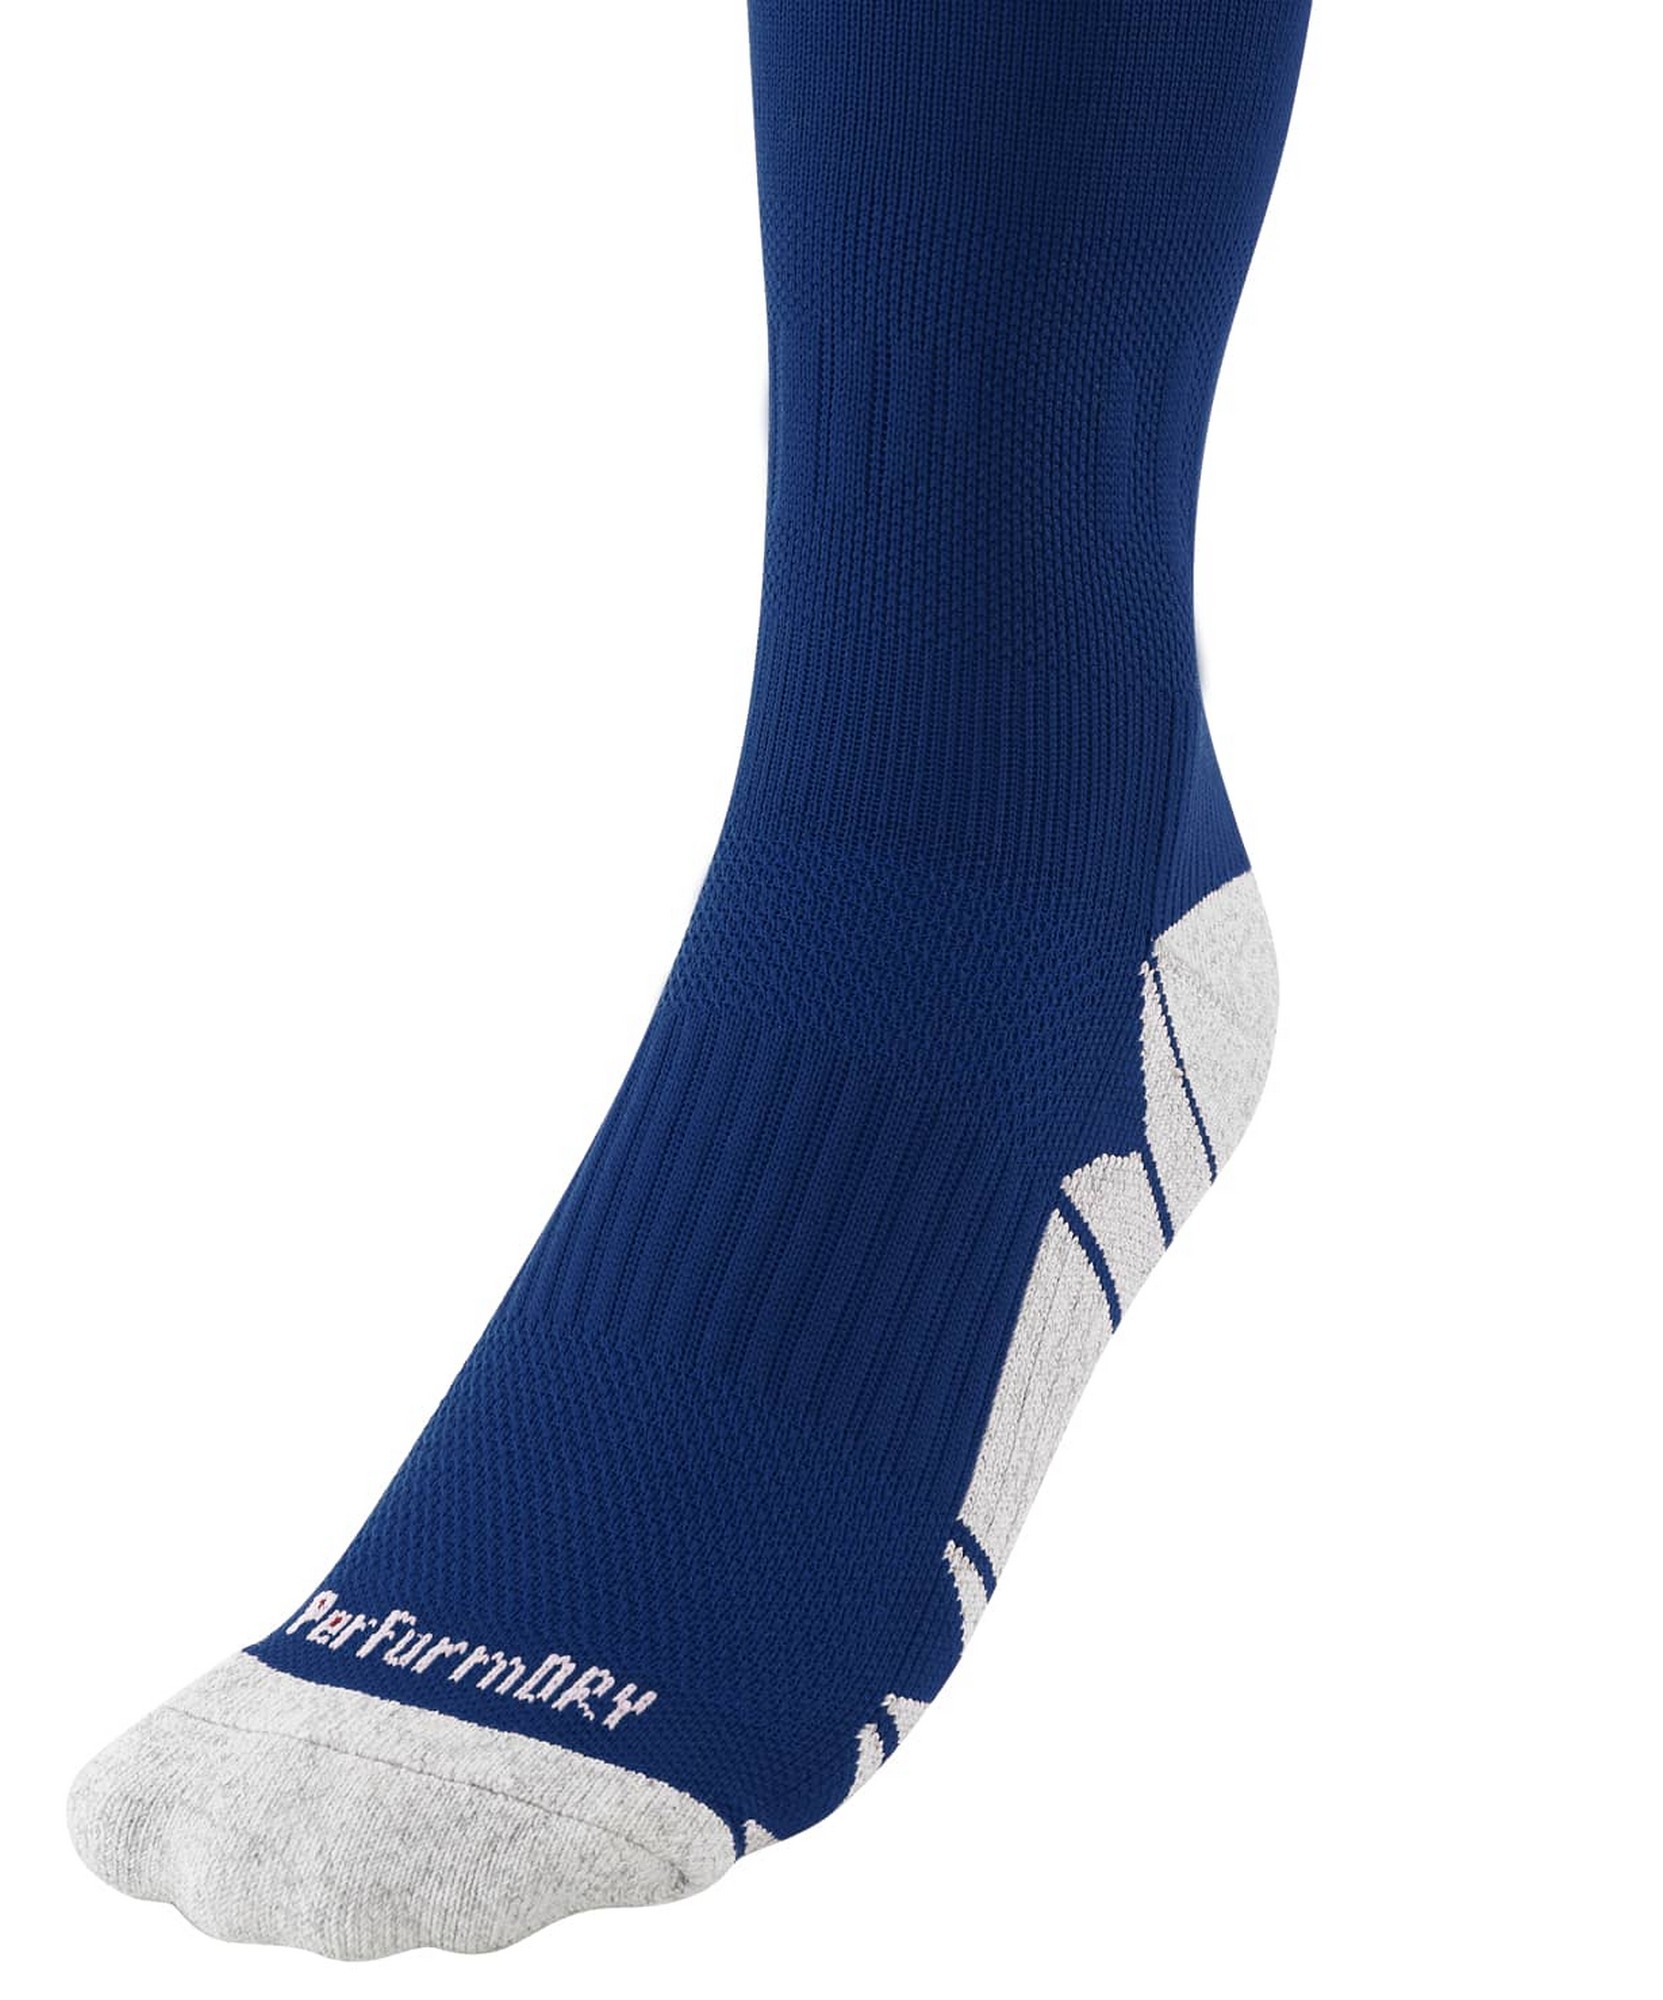 Гетры футбольные Jogel Match Socks, темно-синий 1663_2000